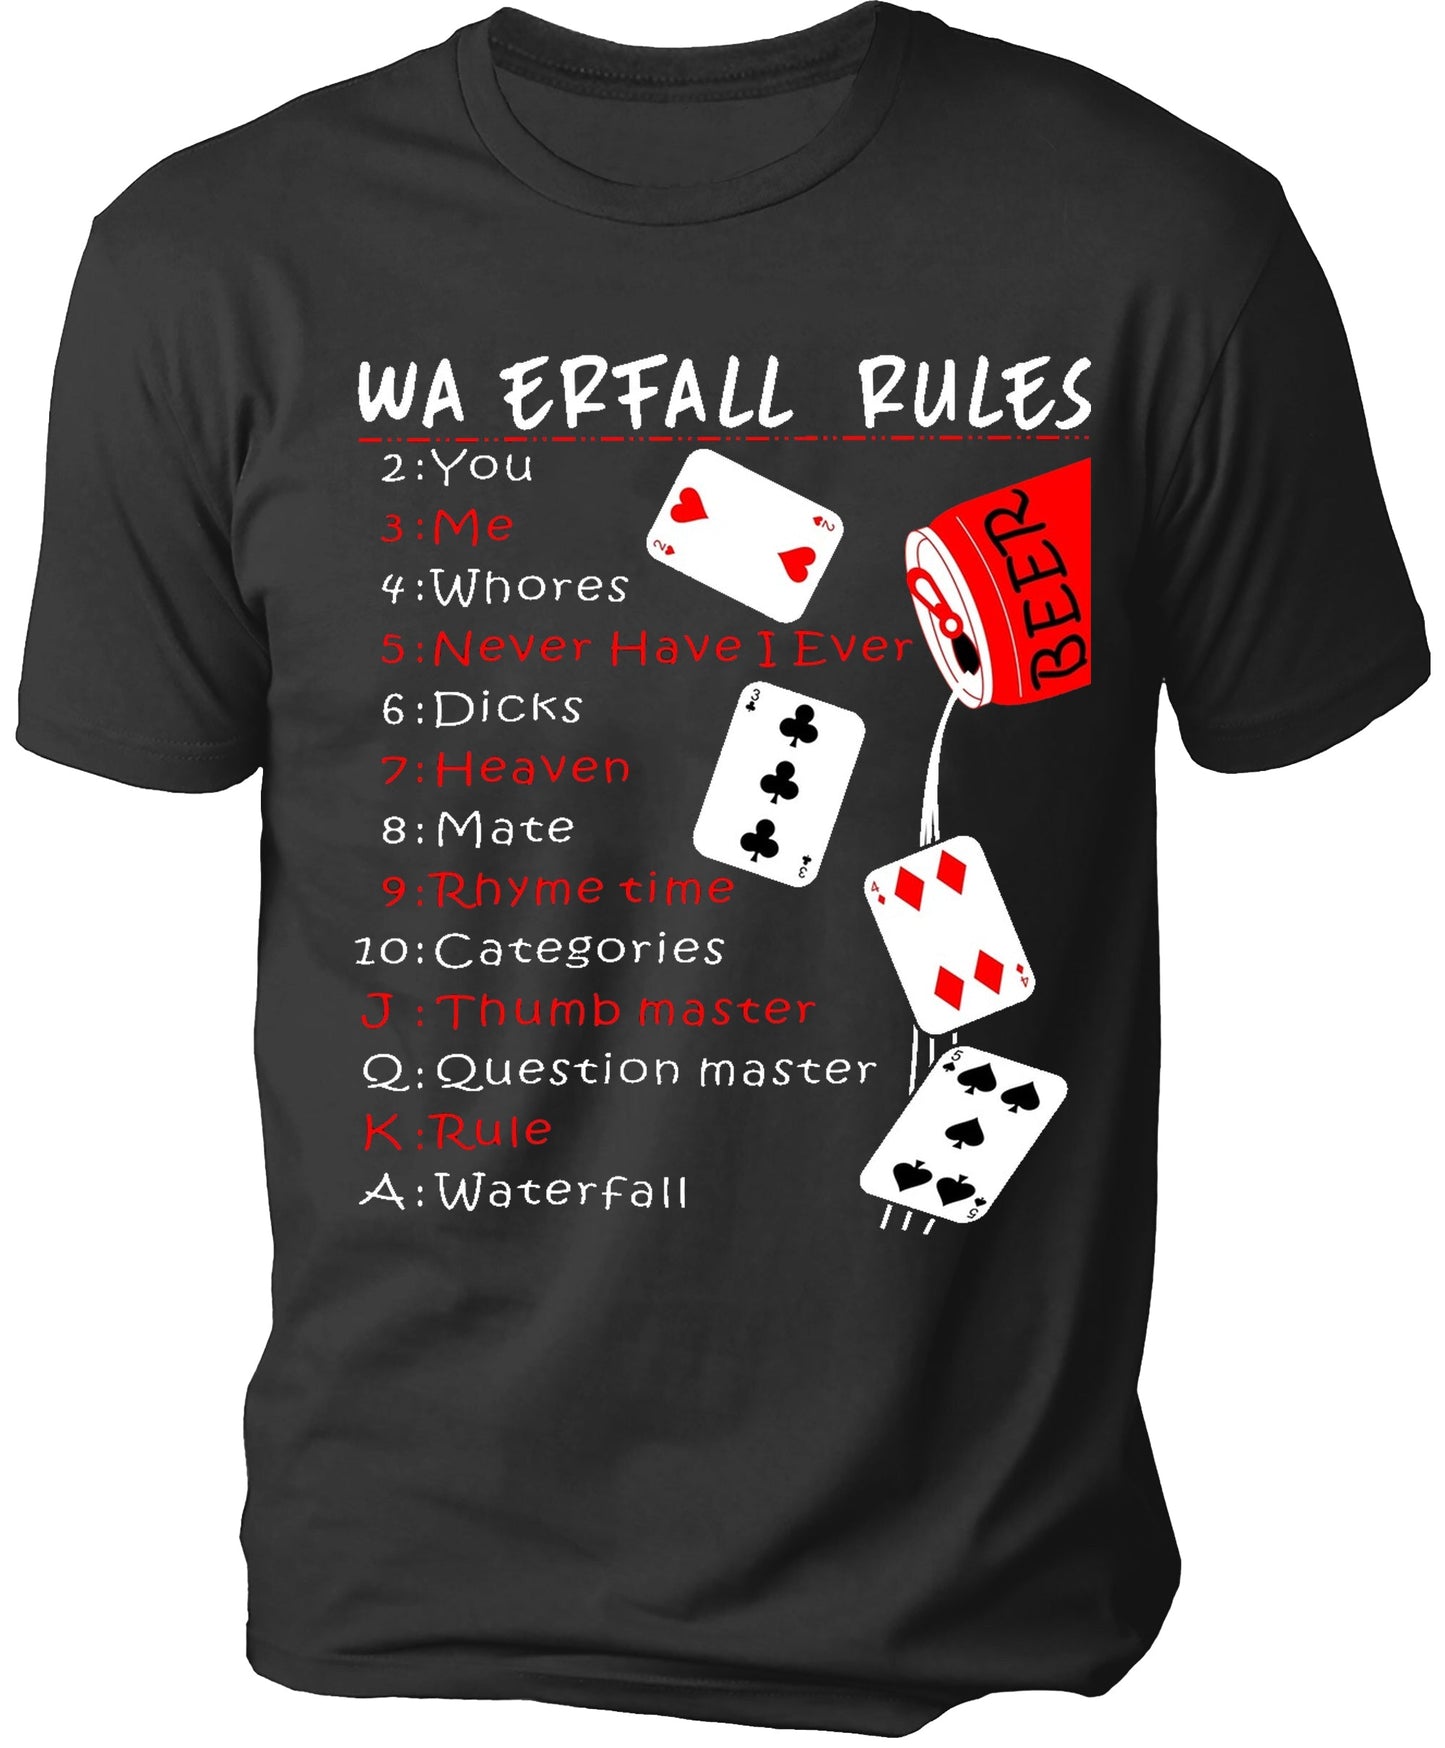 WA ERFALL RULES Men's T-shirt